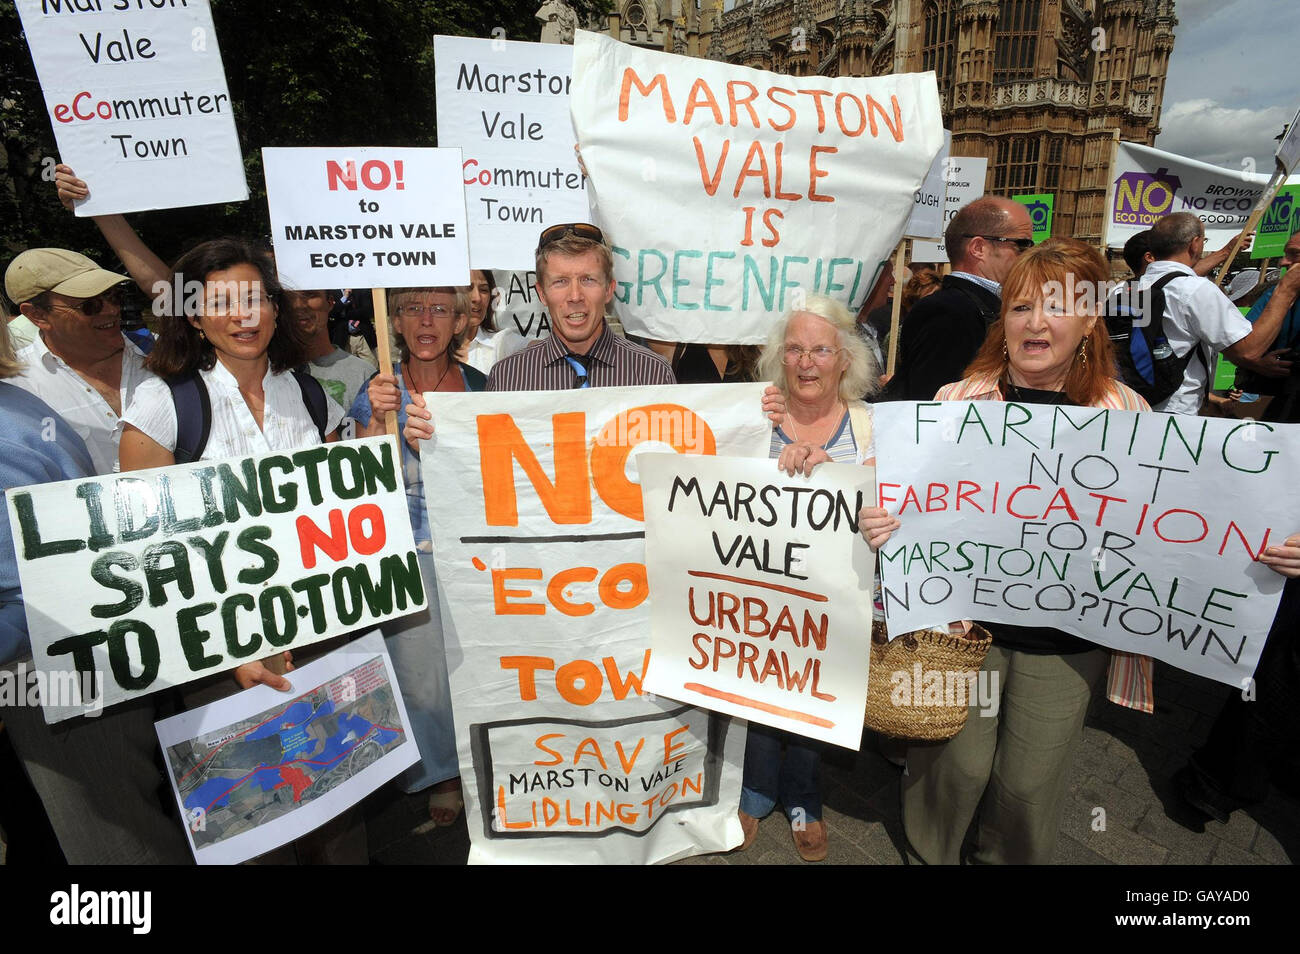 Un gruppo di manifestanti provenienti da Lidlington al di fuori delle Camere del Parlamento, a Londra, si oppongono ai progetti di costruzione di nuove eco-città nella contea del Bedfordshire. Foto Stock